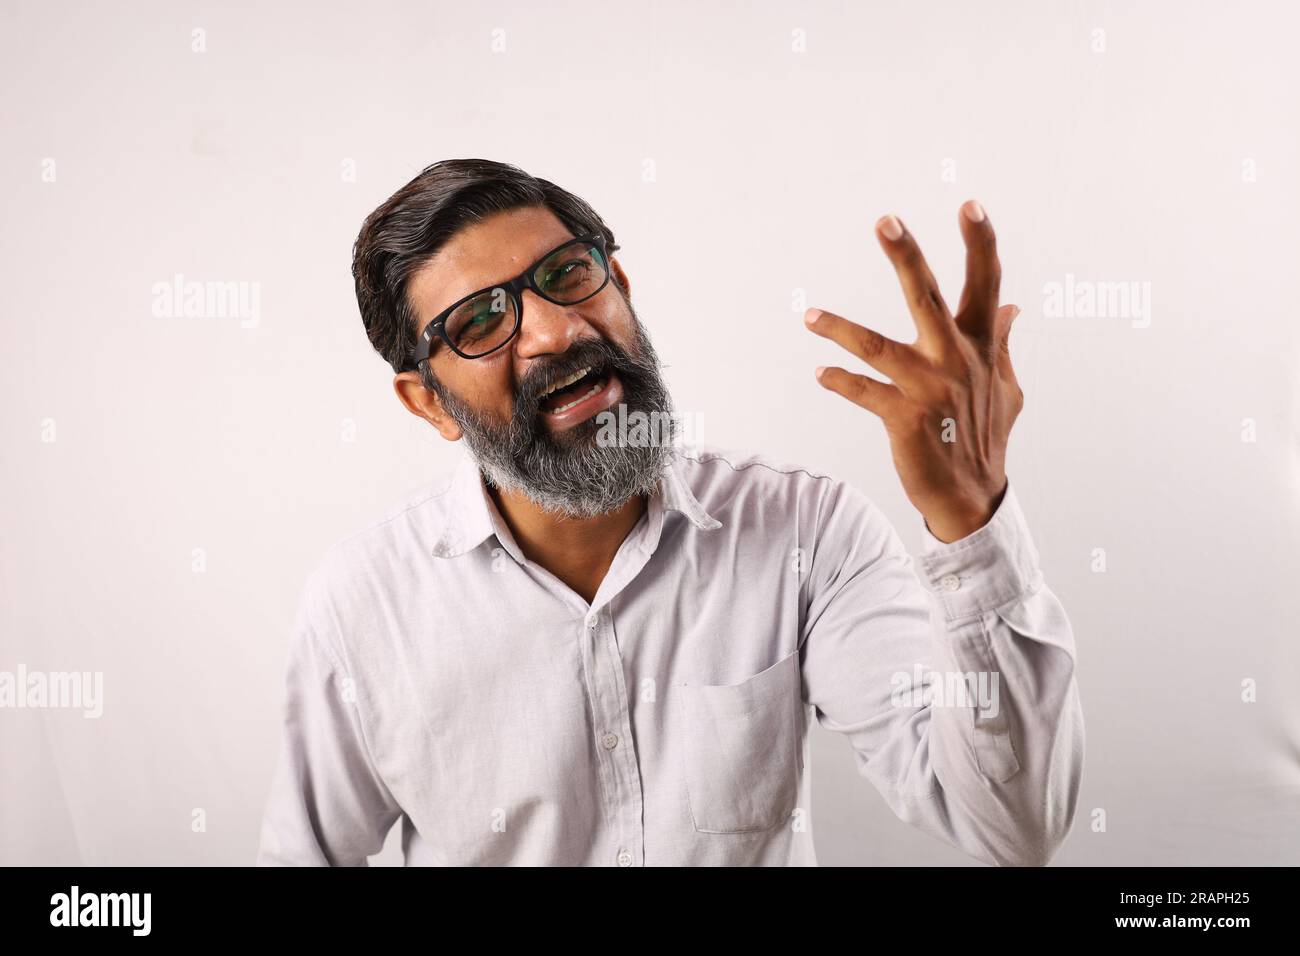 Portrait d'un homme barbu indien portant une chemise. Expressions funky illustrant le sens de l'accomplissement et de la réussite. Se sentir fier d'exécuter les choses. Banque D'Images